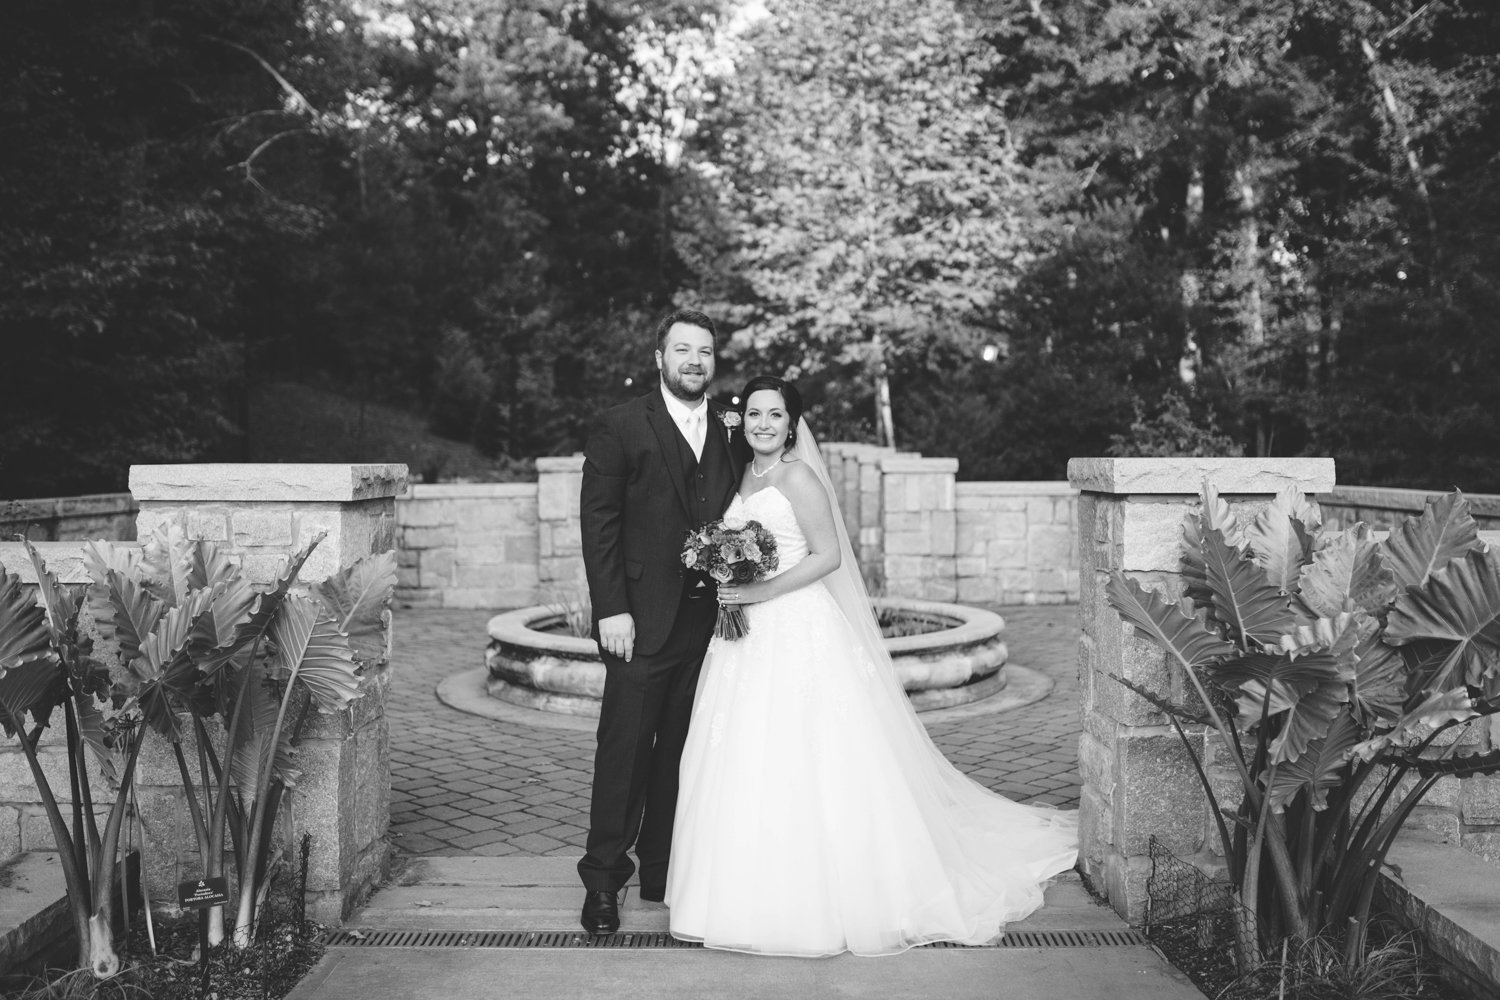 Page Hall - Atlanta, GA Wedding Photographer